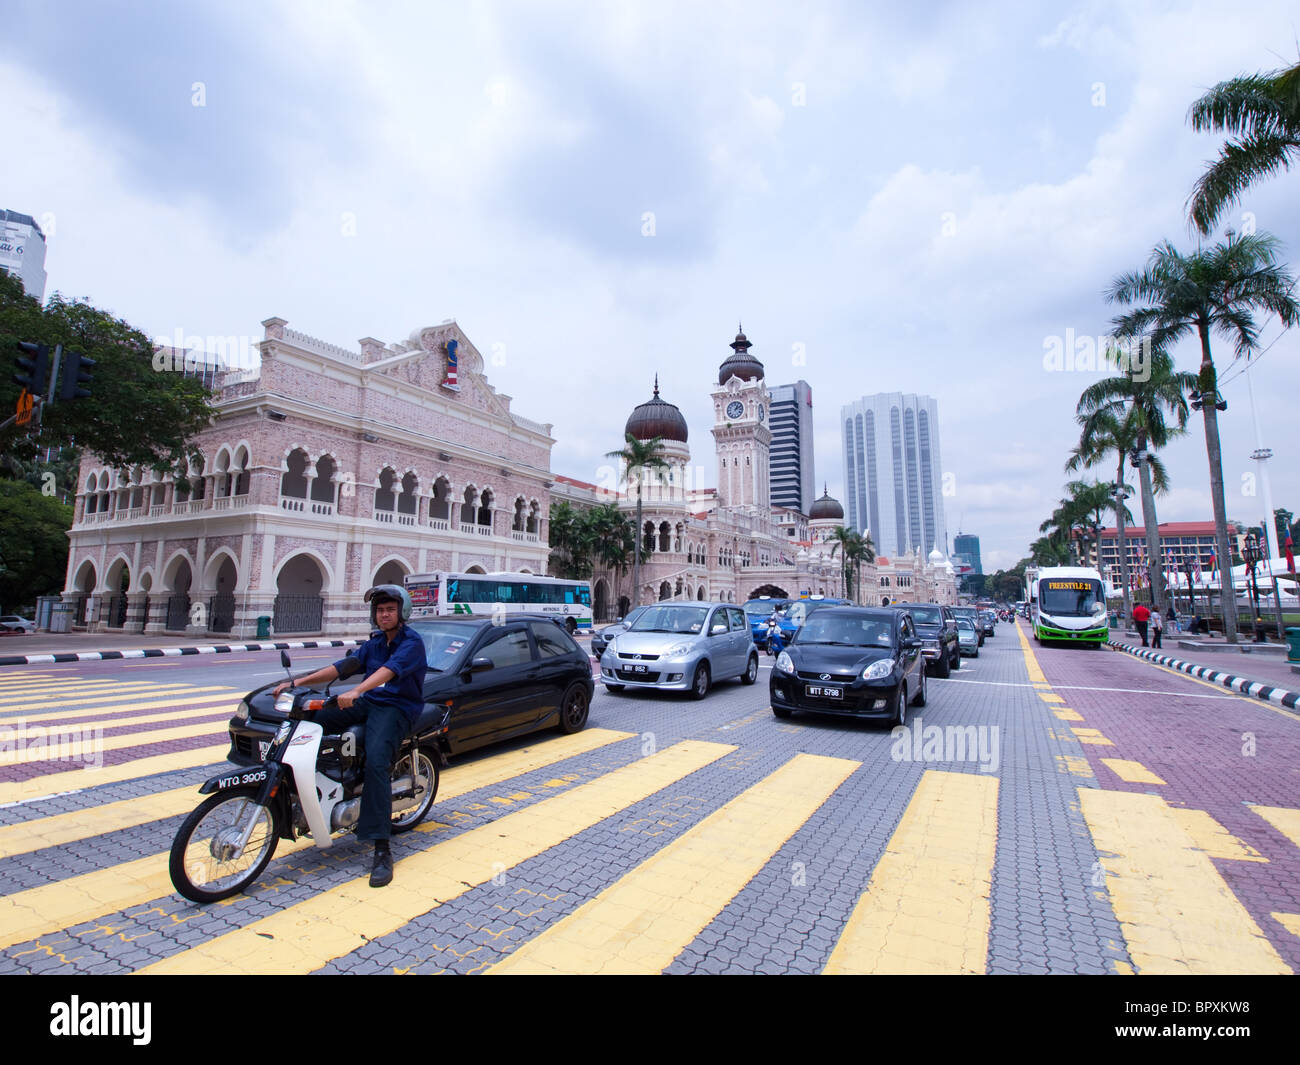 Une scène de rue animée de Kuala Lumpur, Malaisie, avec le Sultan Abdul Samad Building en arrière-plan. Banque D'Images